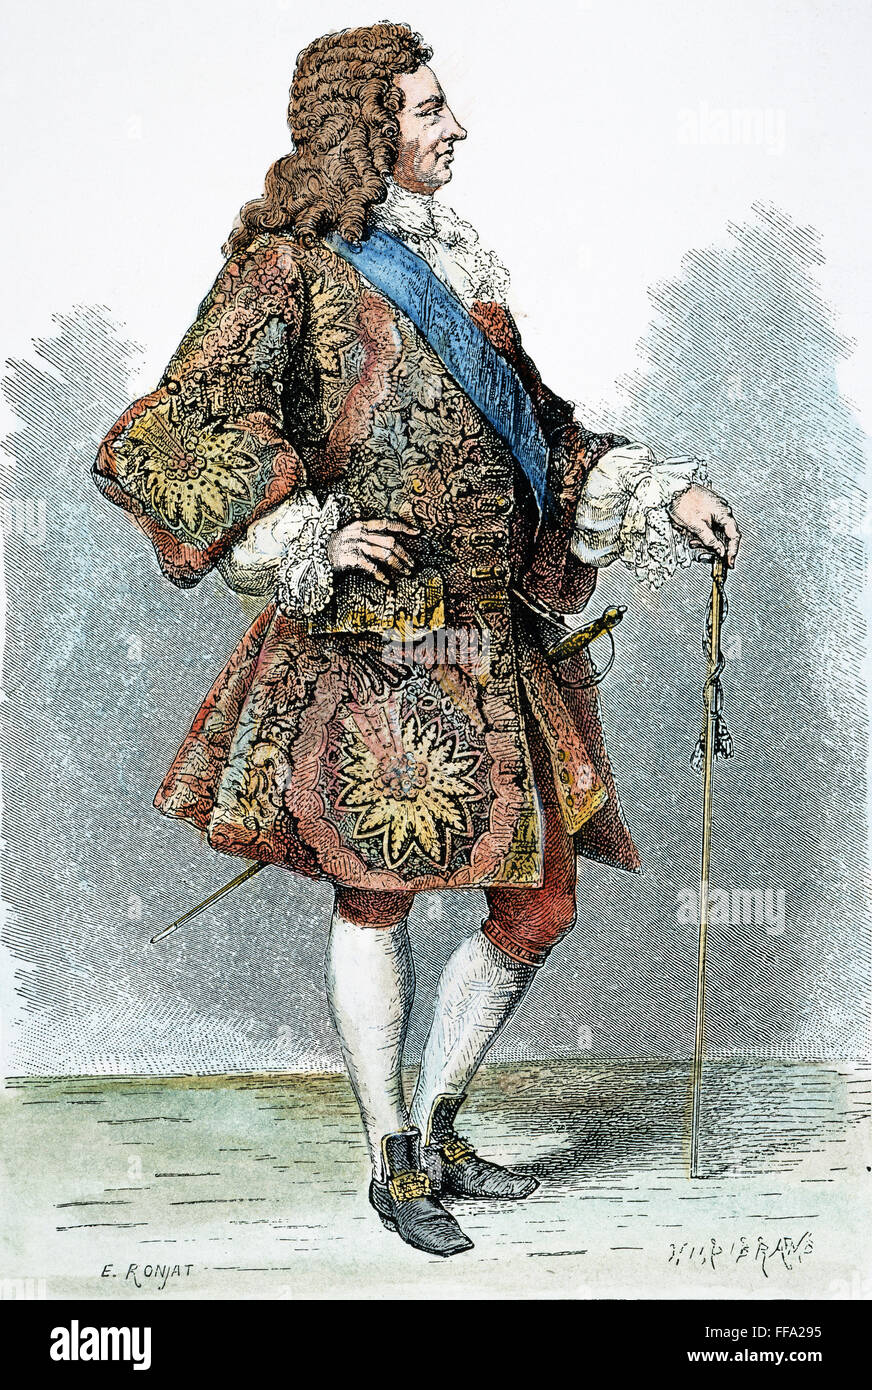 König GEORGE i. von ENGLAND /n(1660-1727). Holzstich, 19. Jahrhundert. Stockfoto